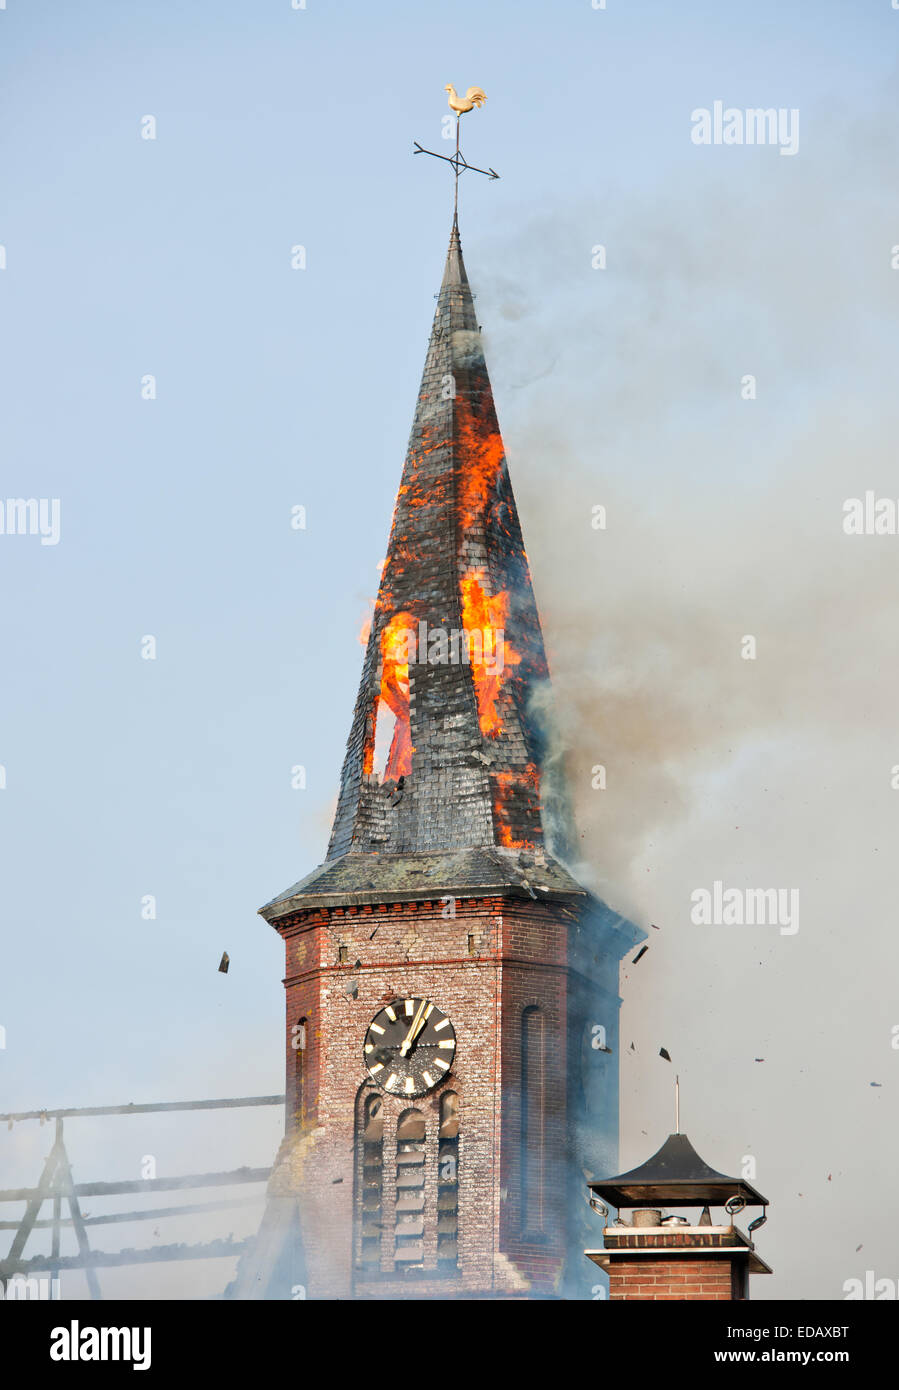 La torre de la Iglesia en el fuego Foto de stock